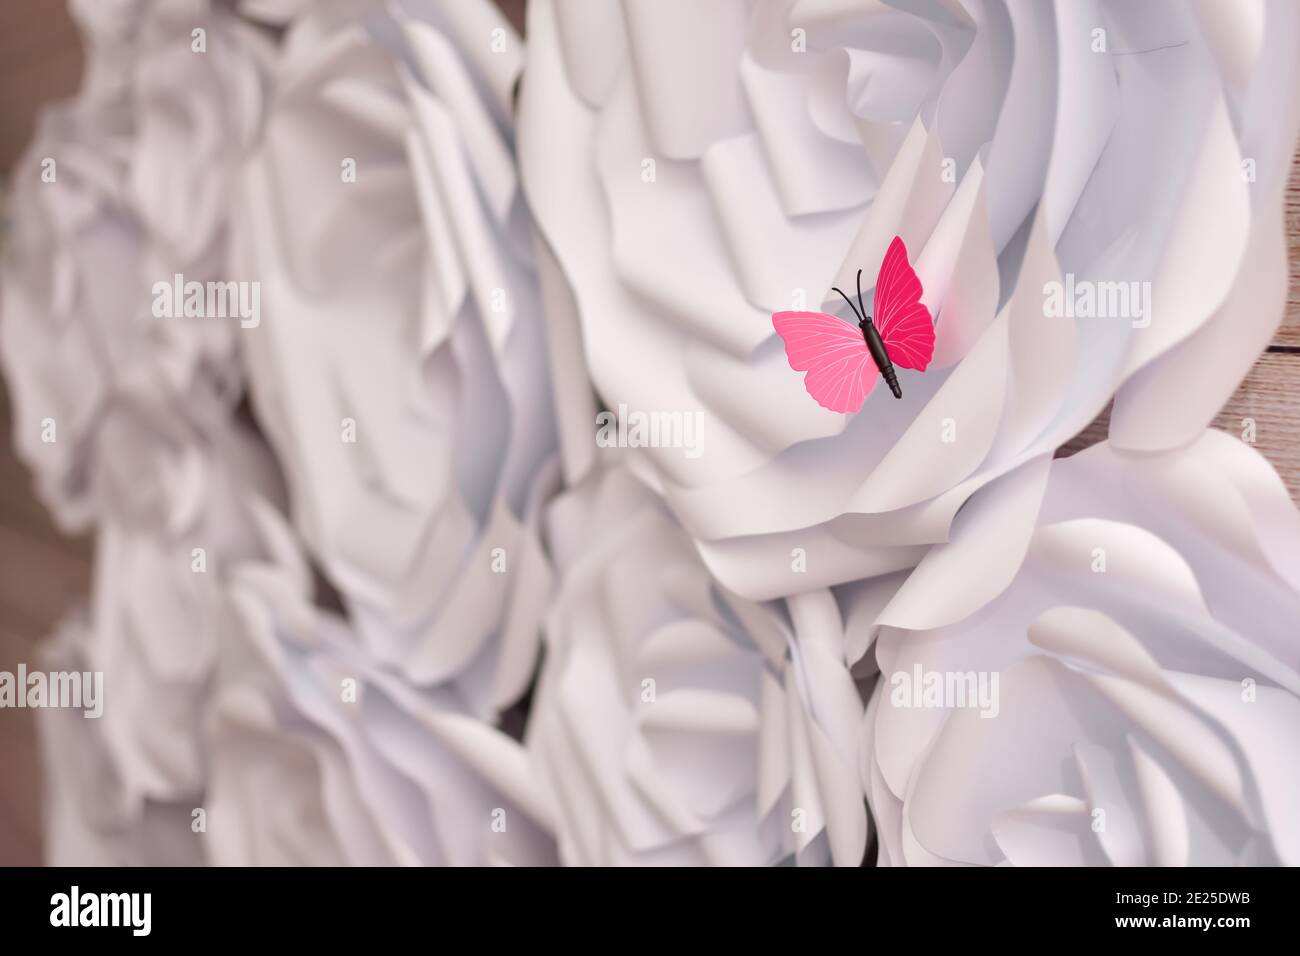 Weiße große Papierblumen an der Wand. Handarbeit kreative Abstraktion. Stockfoto